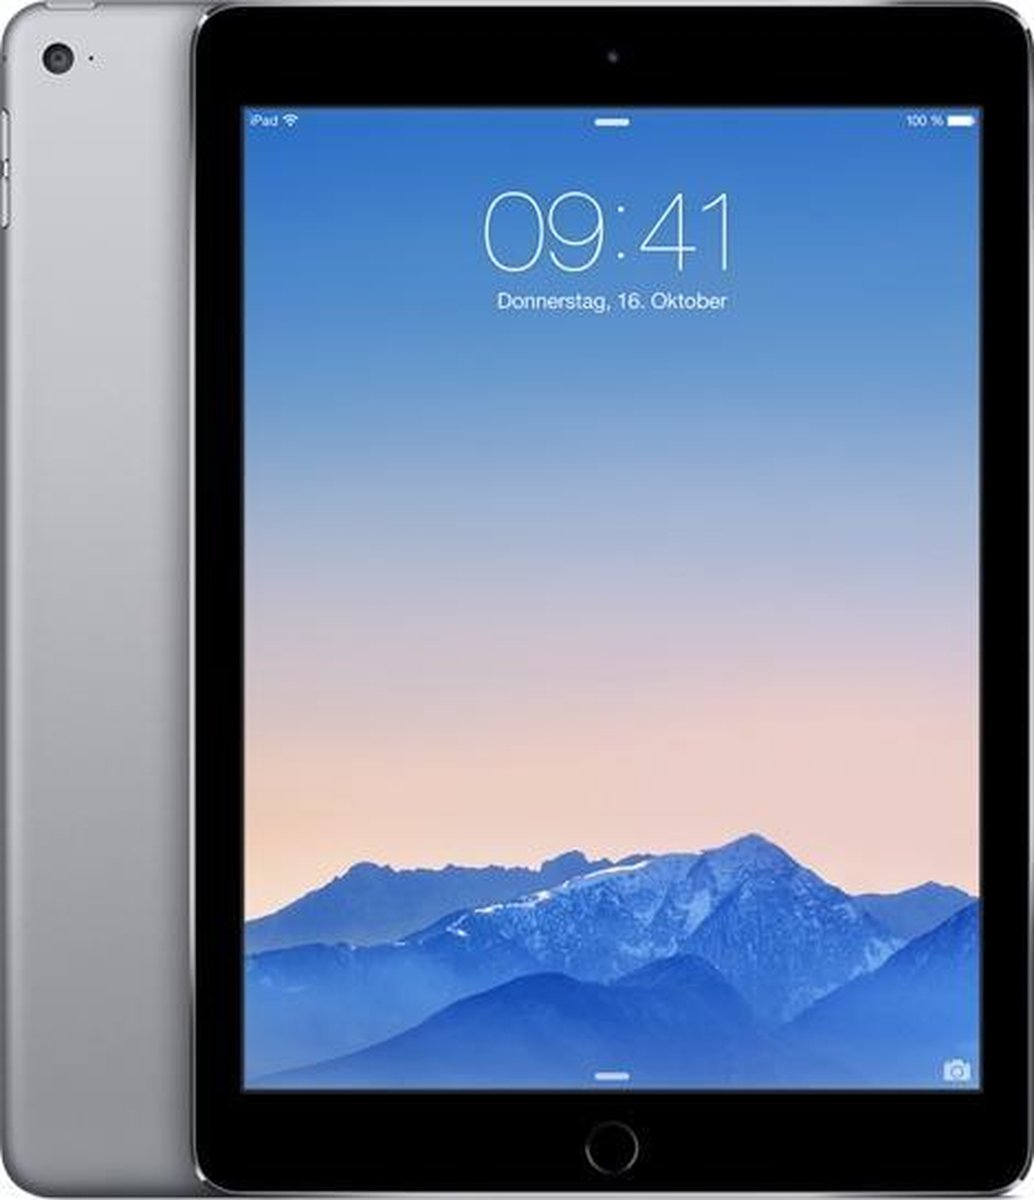 Apple iPad Air 2 - 9.7 inch - WiFi - 64GB - Spacegrijs